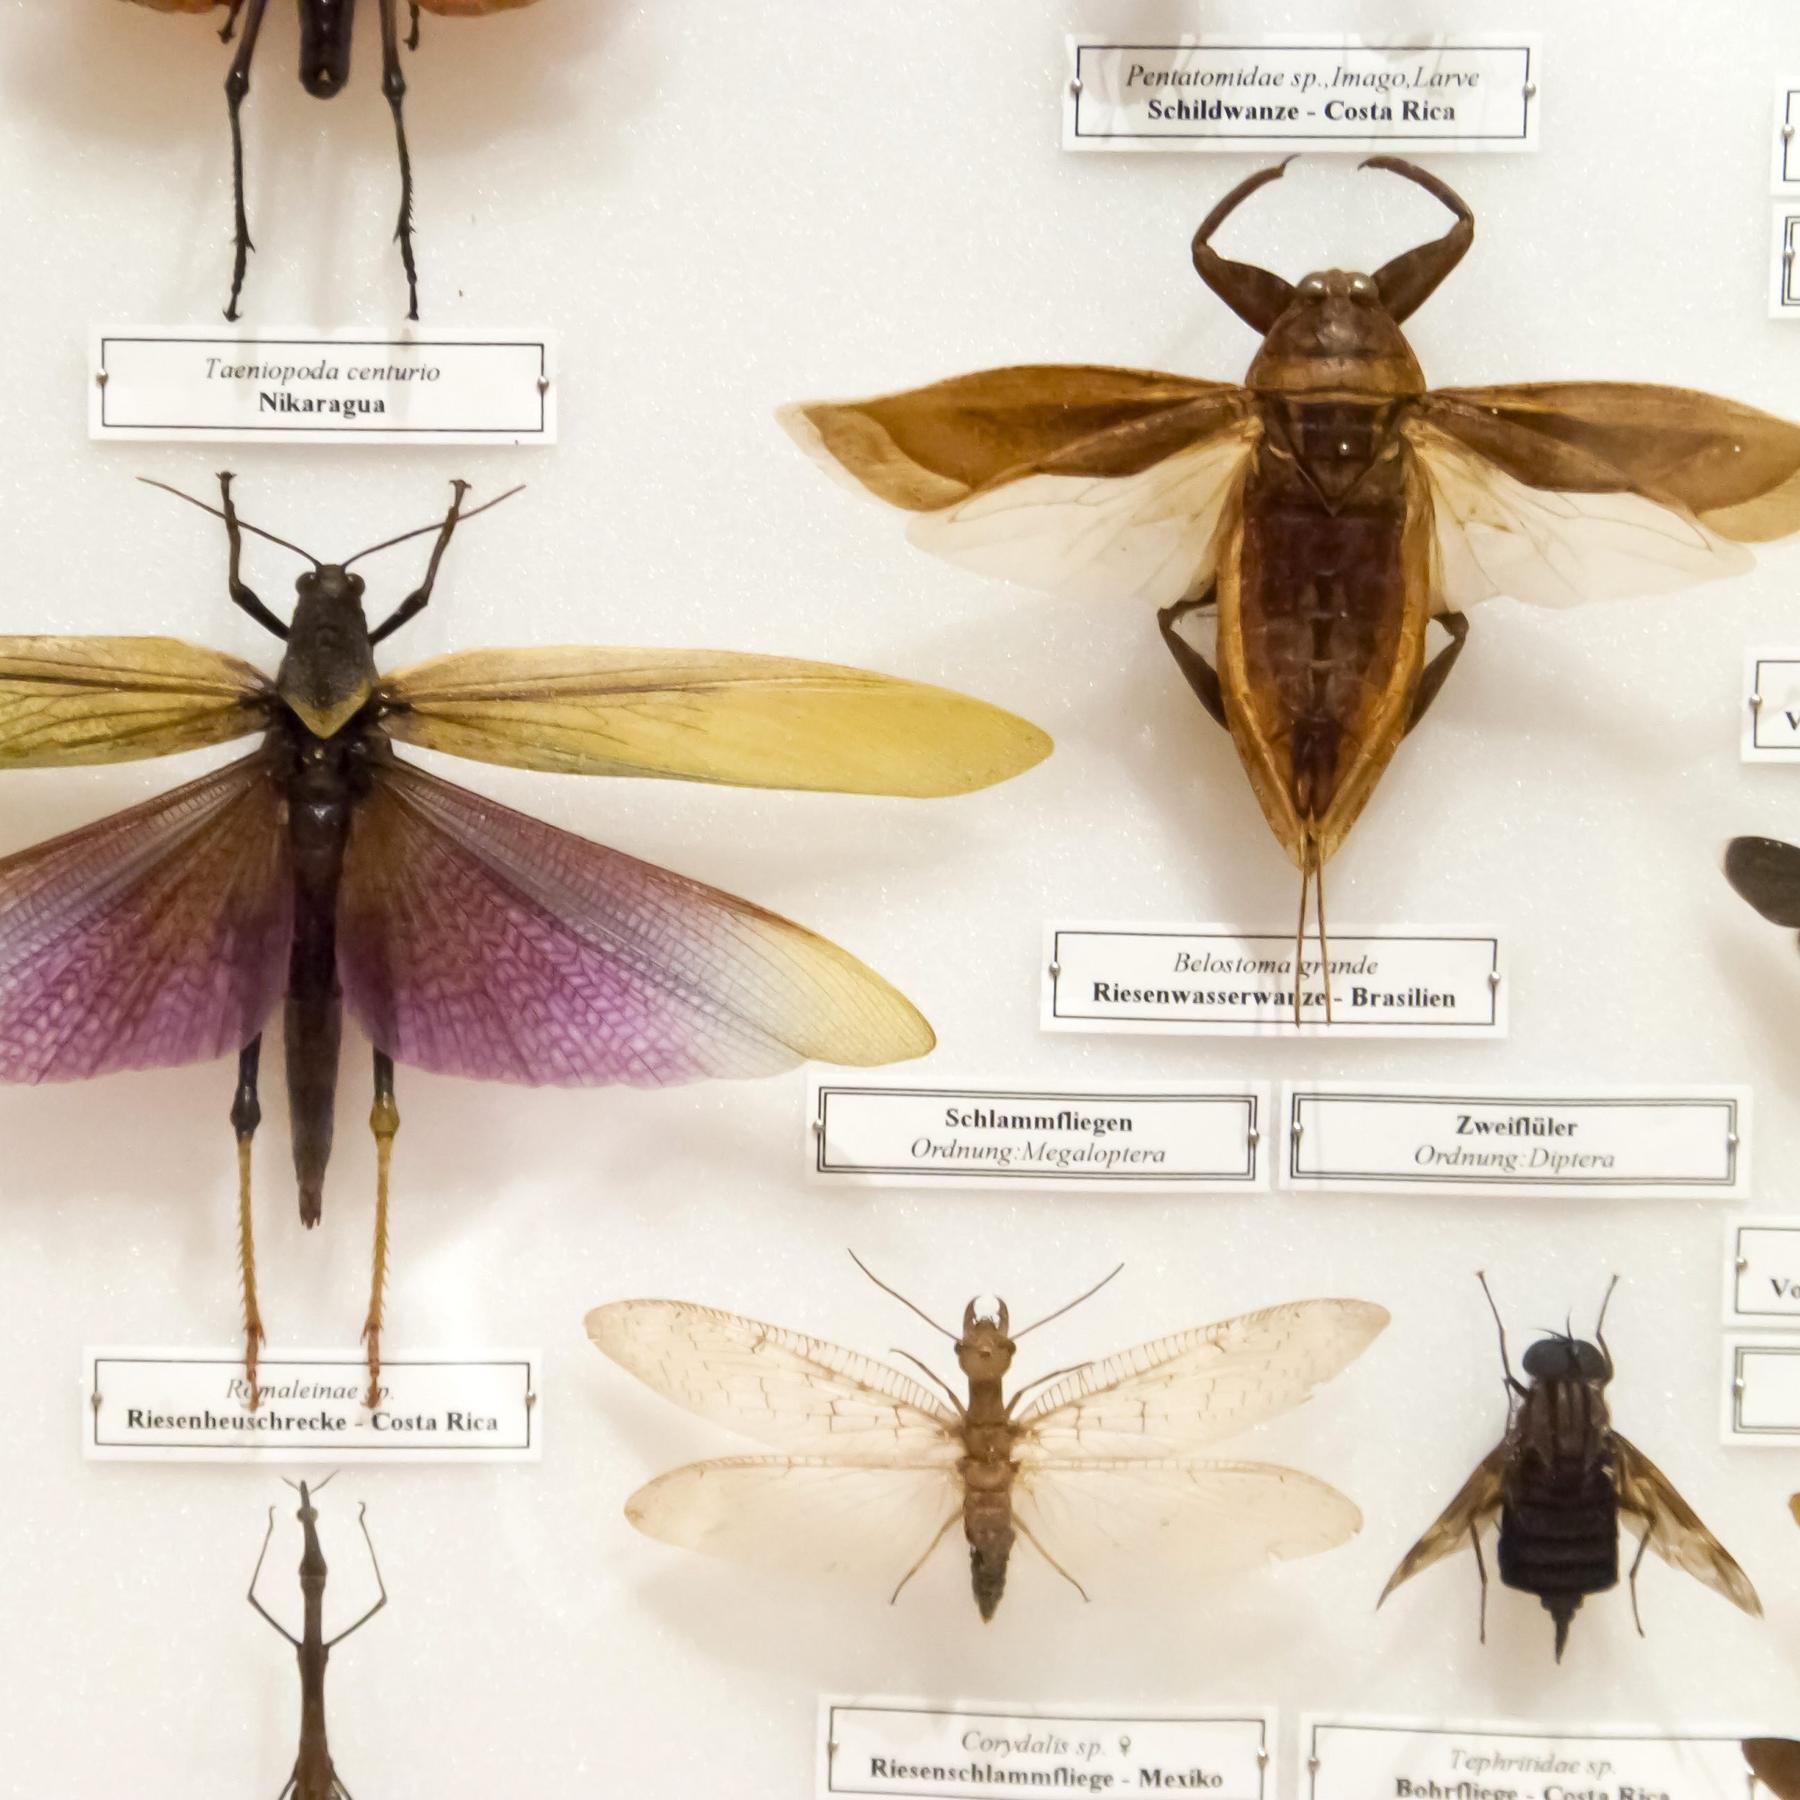 Knochen, Blüten, Spinnenbeine - Die naturkundlichen Sammlungen Bayerns